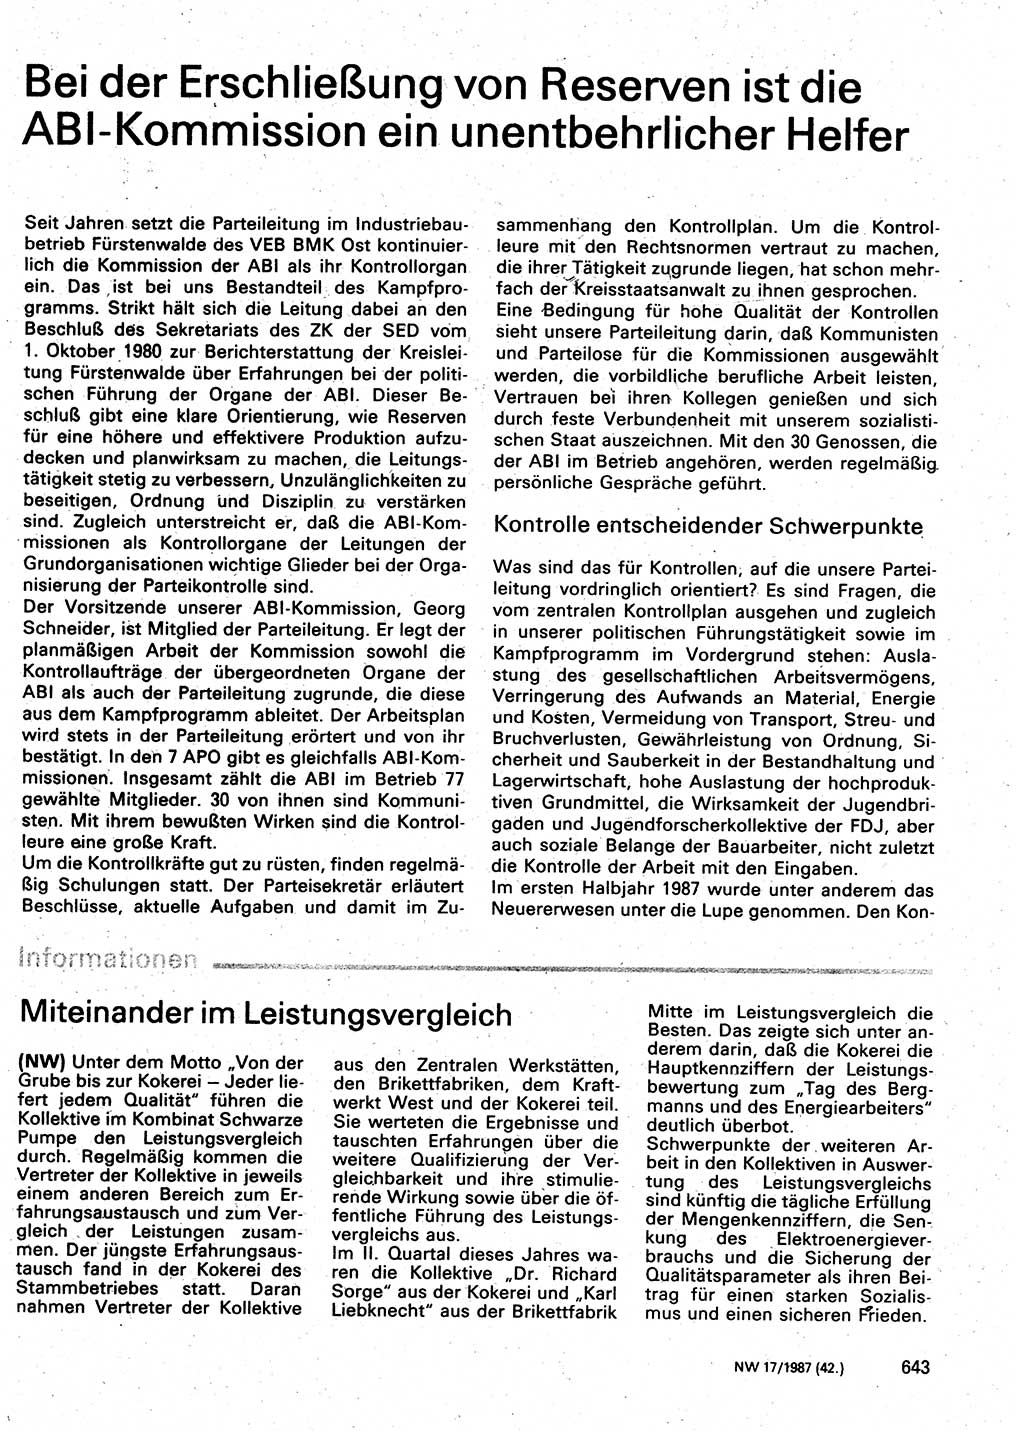 Neuer Weg (NW), Organ des Zentralkomitees (ZK) der SED (Sozialistische Einheitspartei Deutschlands) für Fragen des Parteilebens, 42. Jahrgang [Deutsche Demokratische Republik (DDR)] 1987, Seite 643 (NW ZK SED DDR 1987, S. 643)